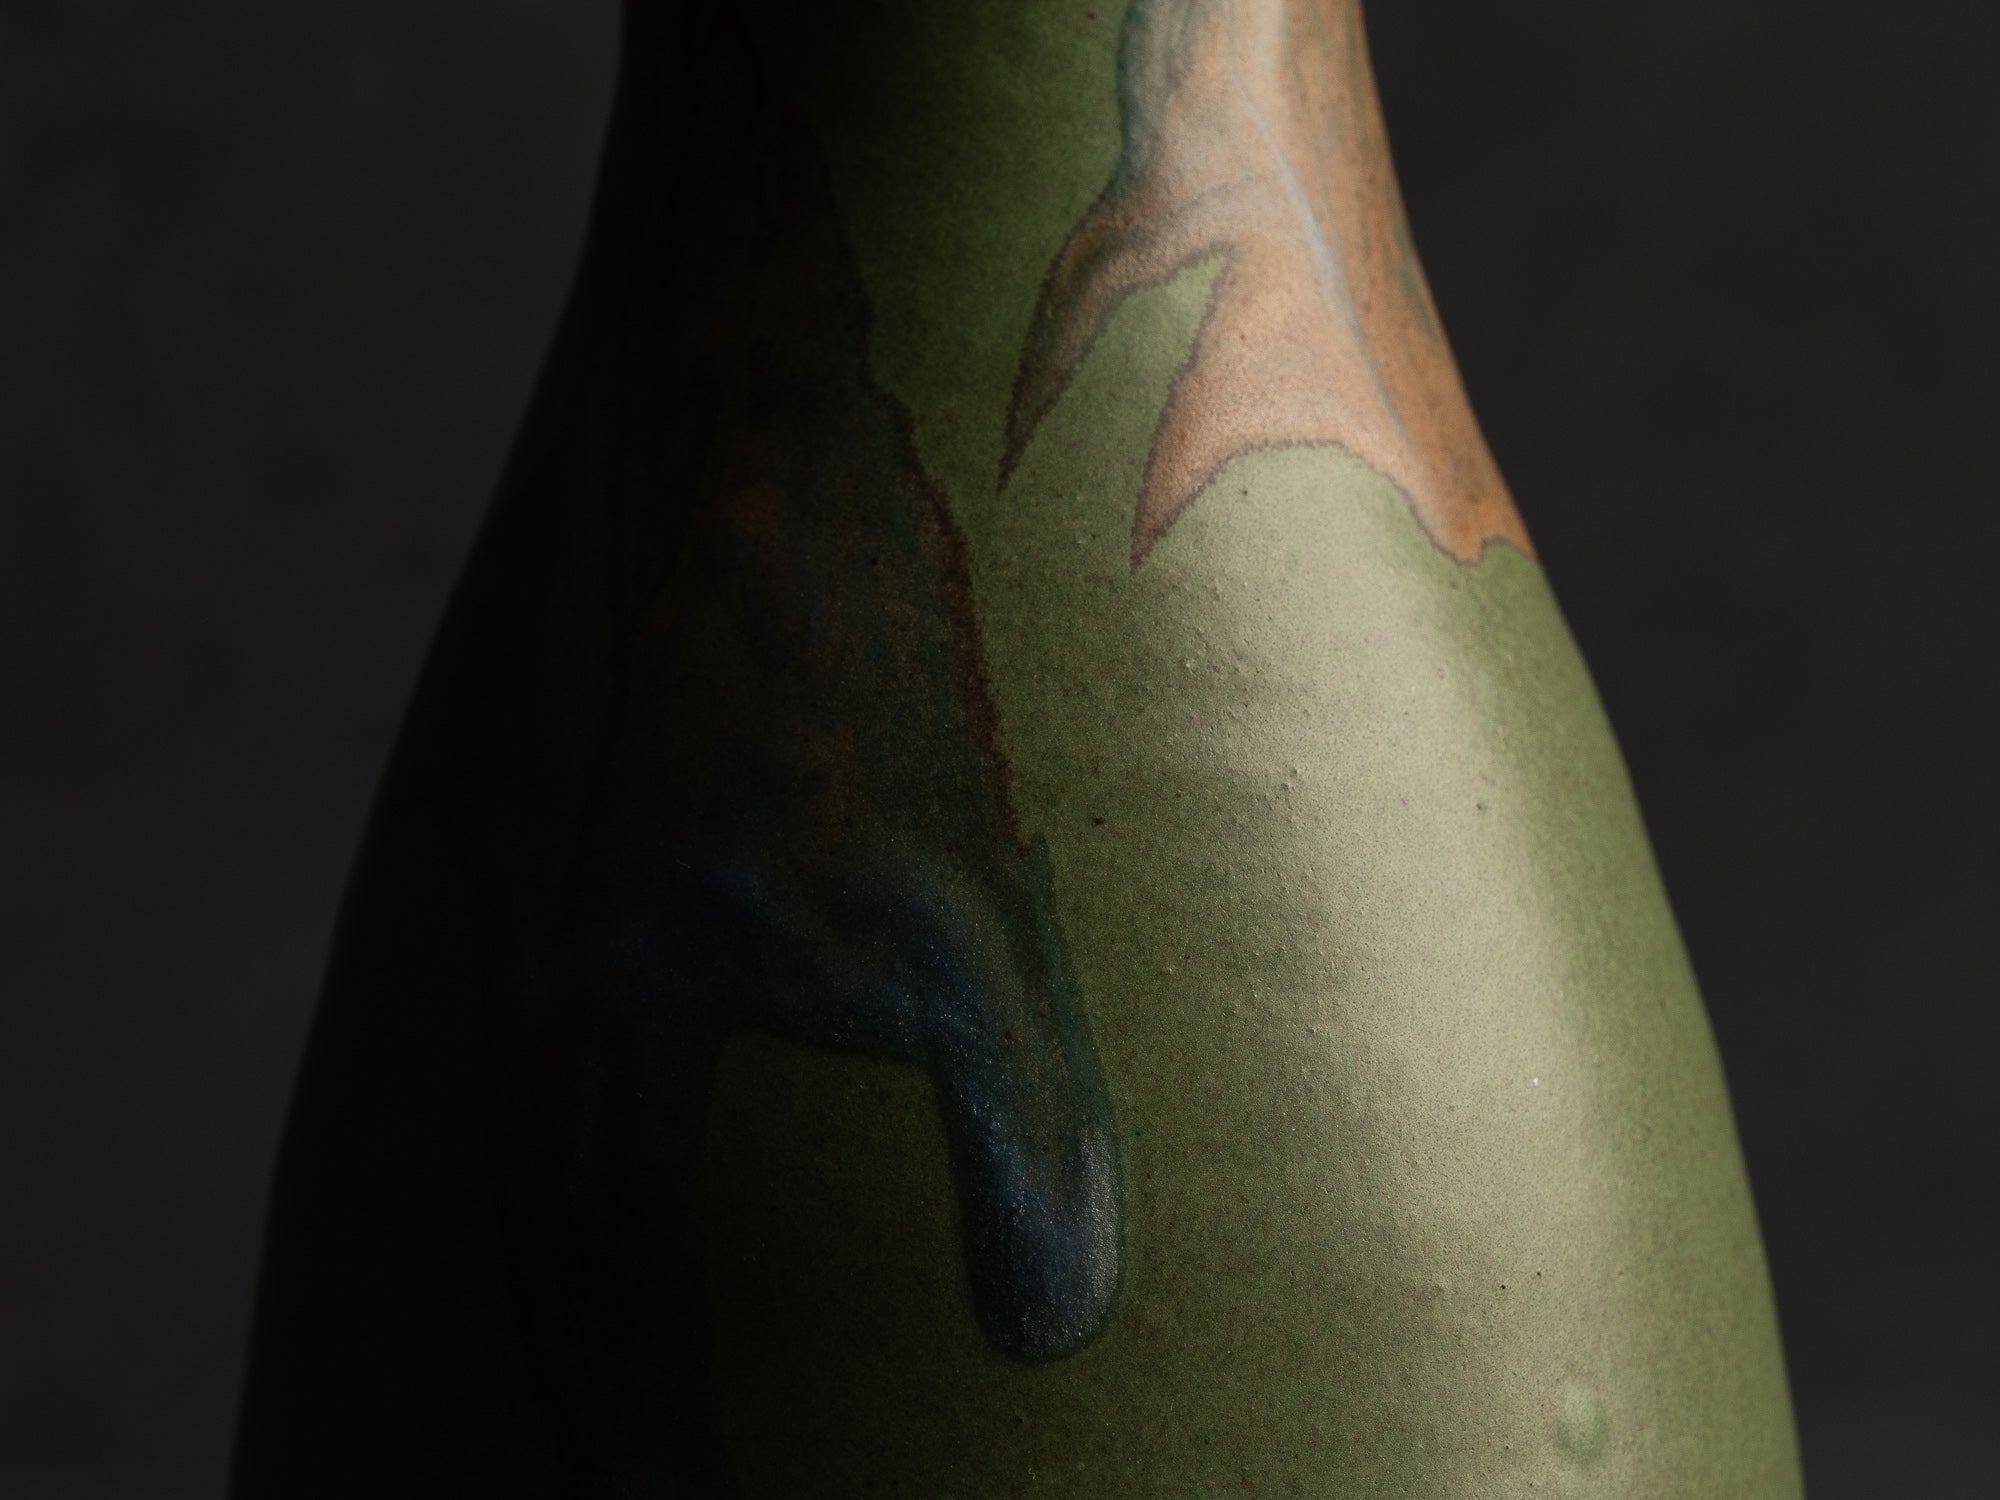 Vase bouteille en grès de Léon Pointu, Atelier Pointu, France (vers 1910-25)..School of Carriès stoneware bottle vase by Léon Pointu, Atelier Pointu, France (circa 1910-25)